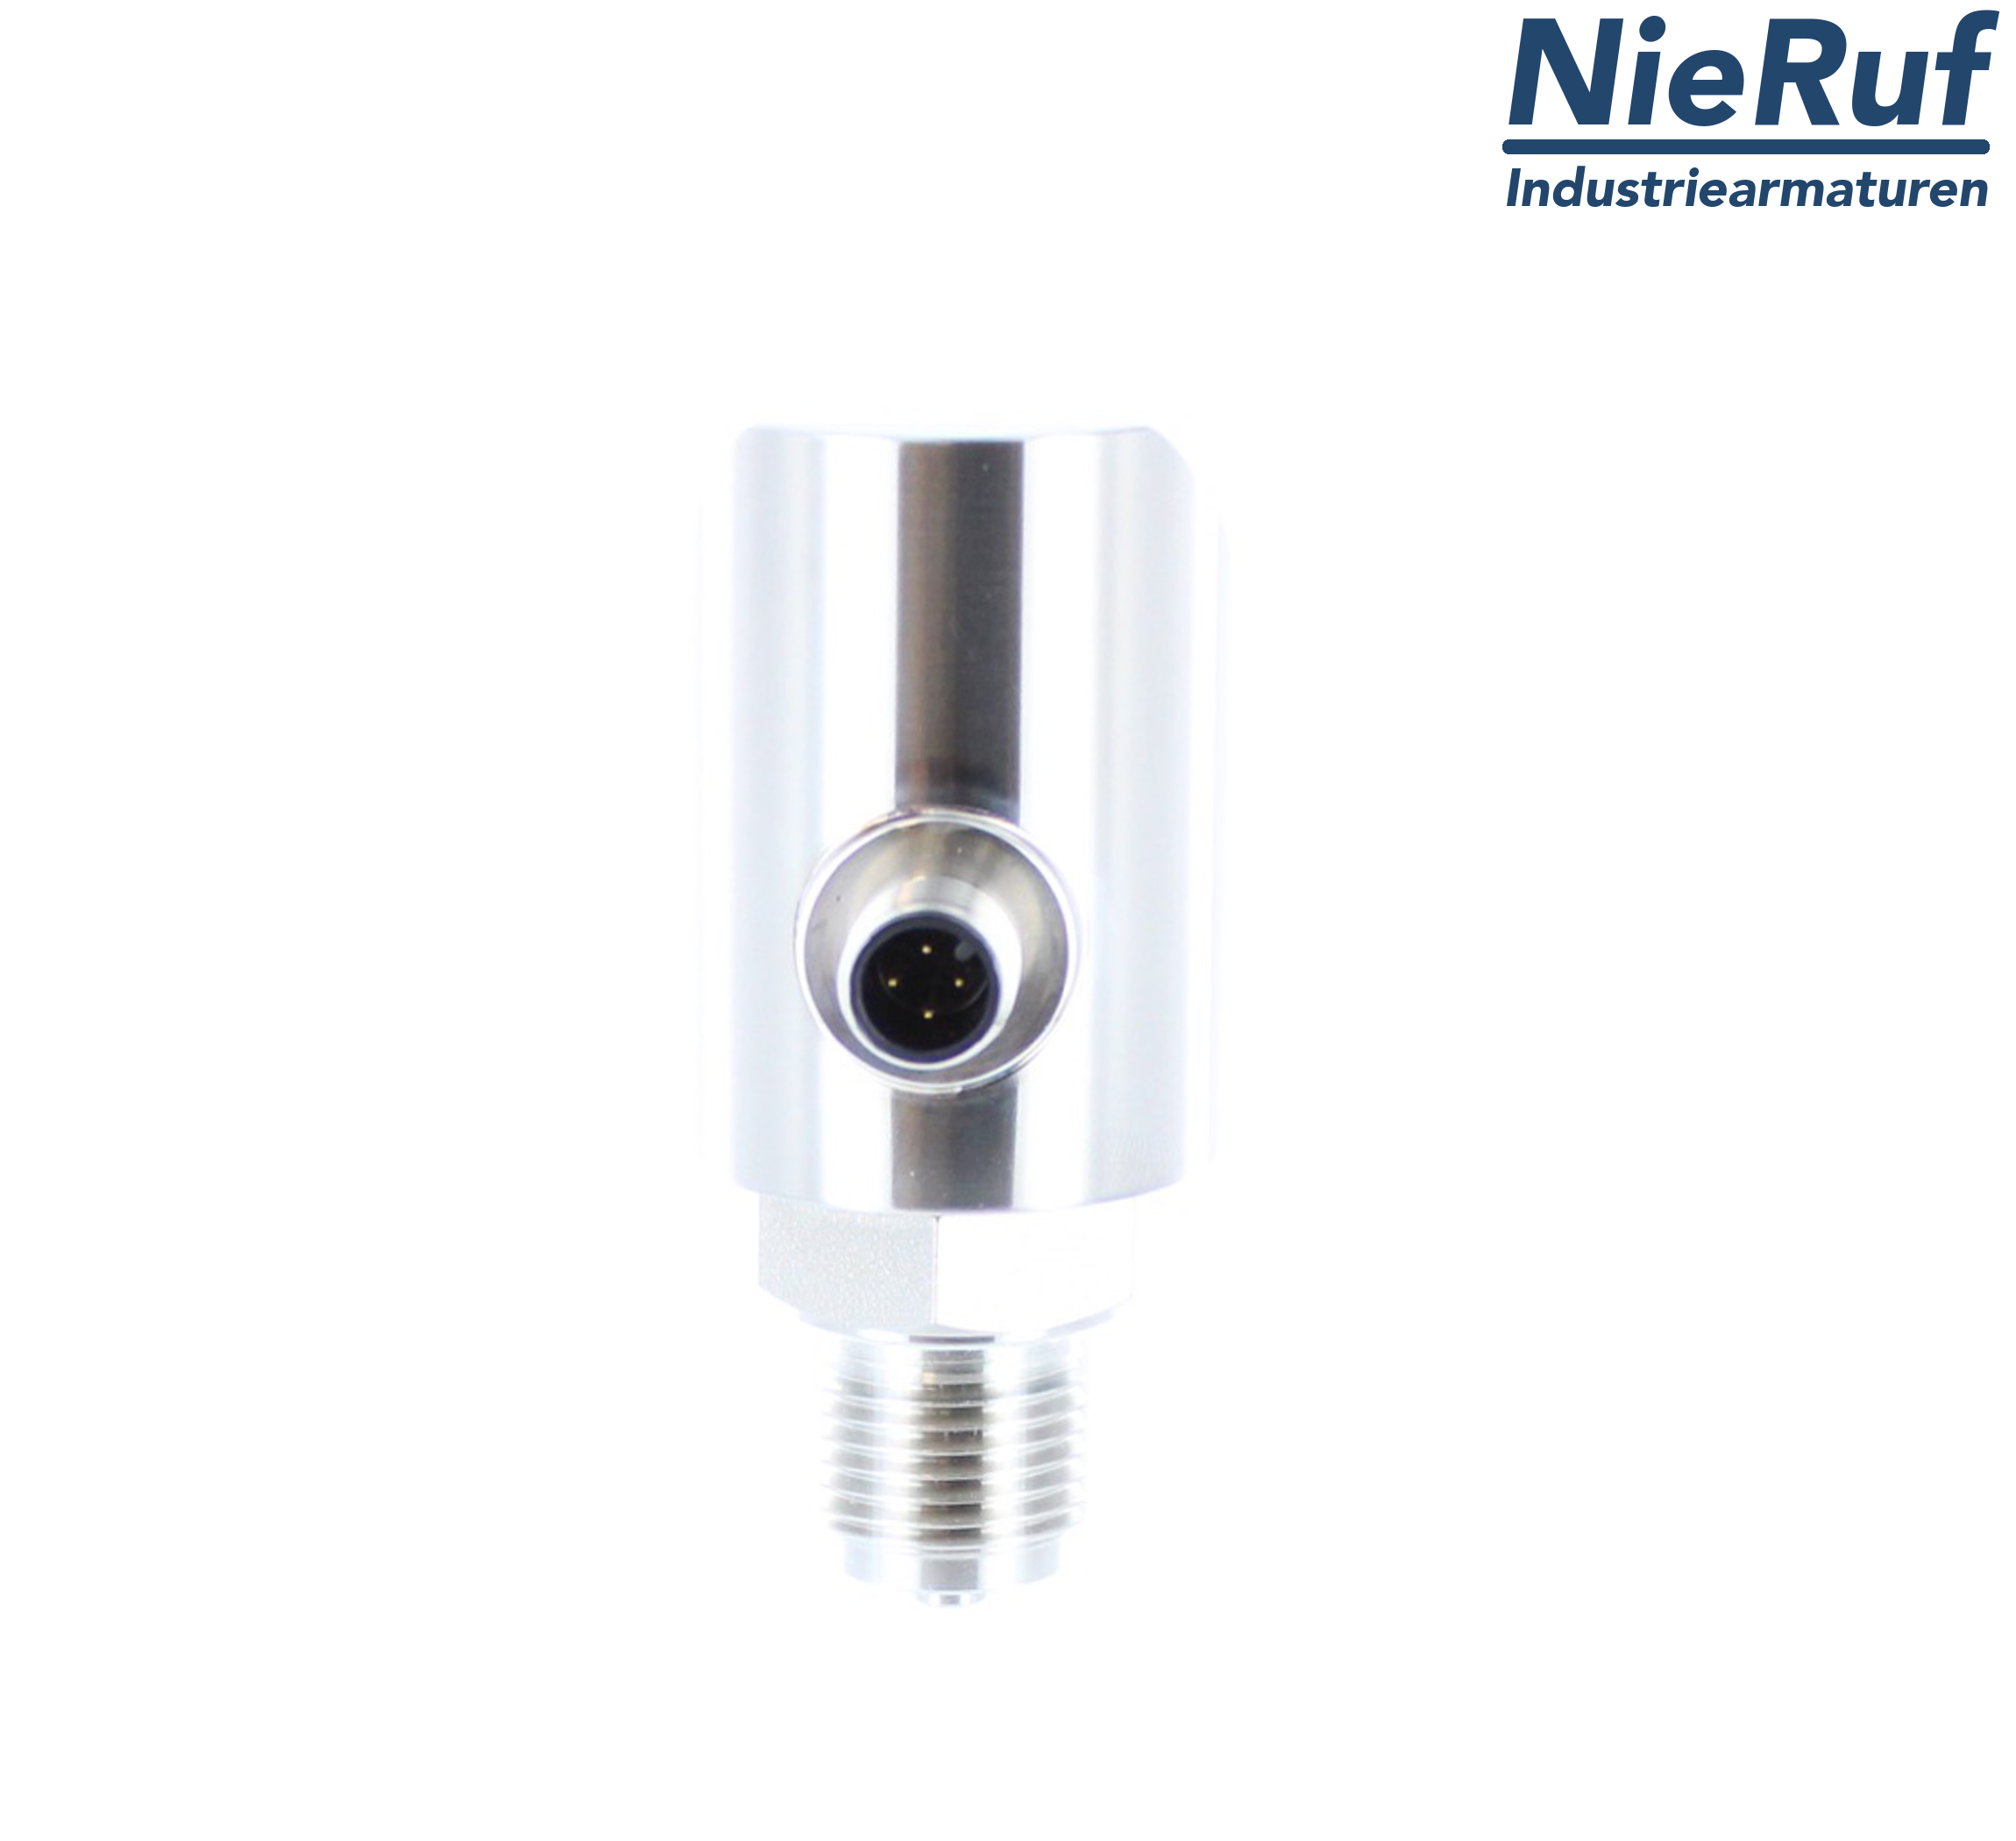 digital pressure sensor G 1/2" B IB 4-wire: 1xPNP, 1x4 - 20mA FPM 0,0 - 600,0 bar